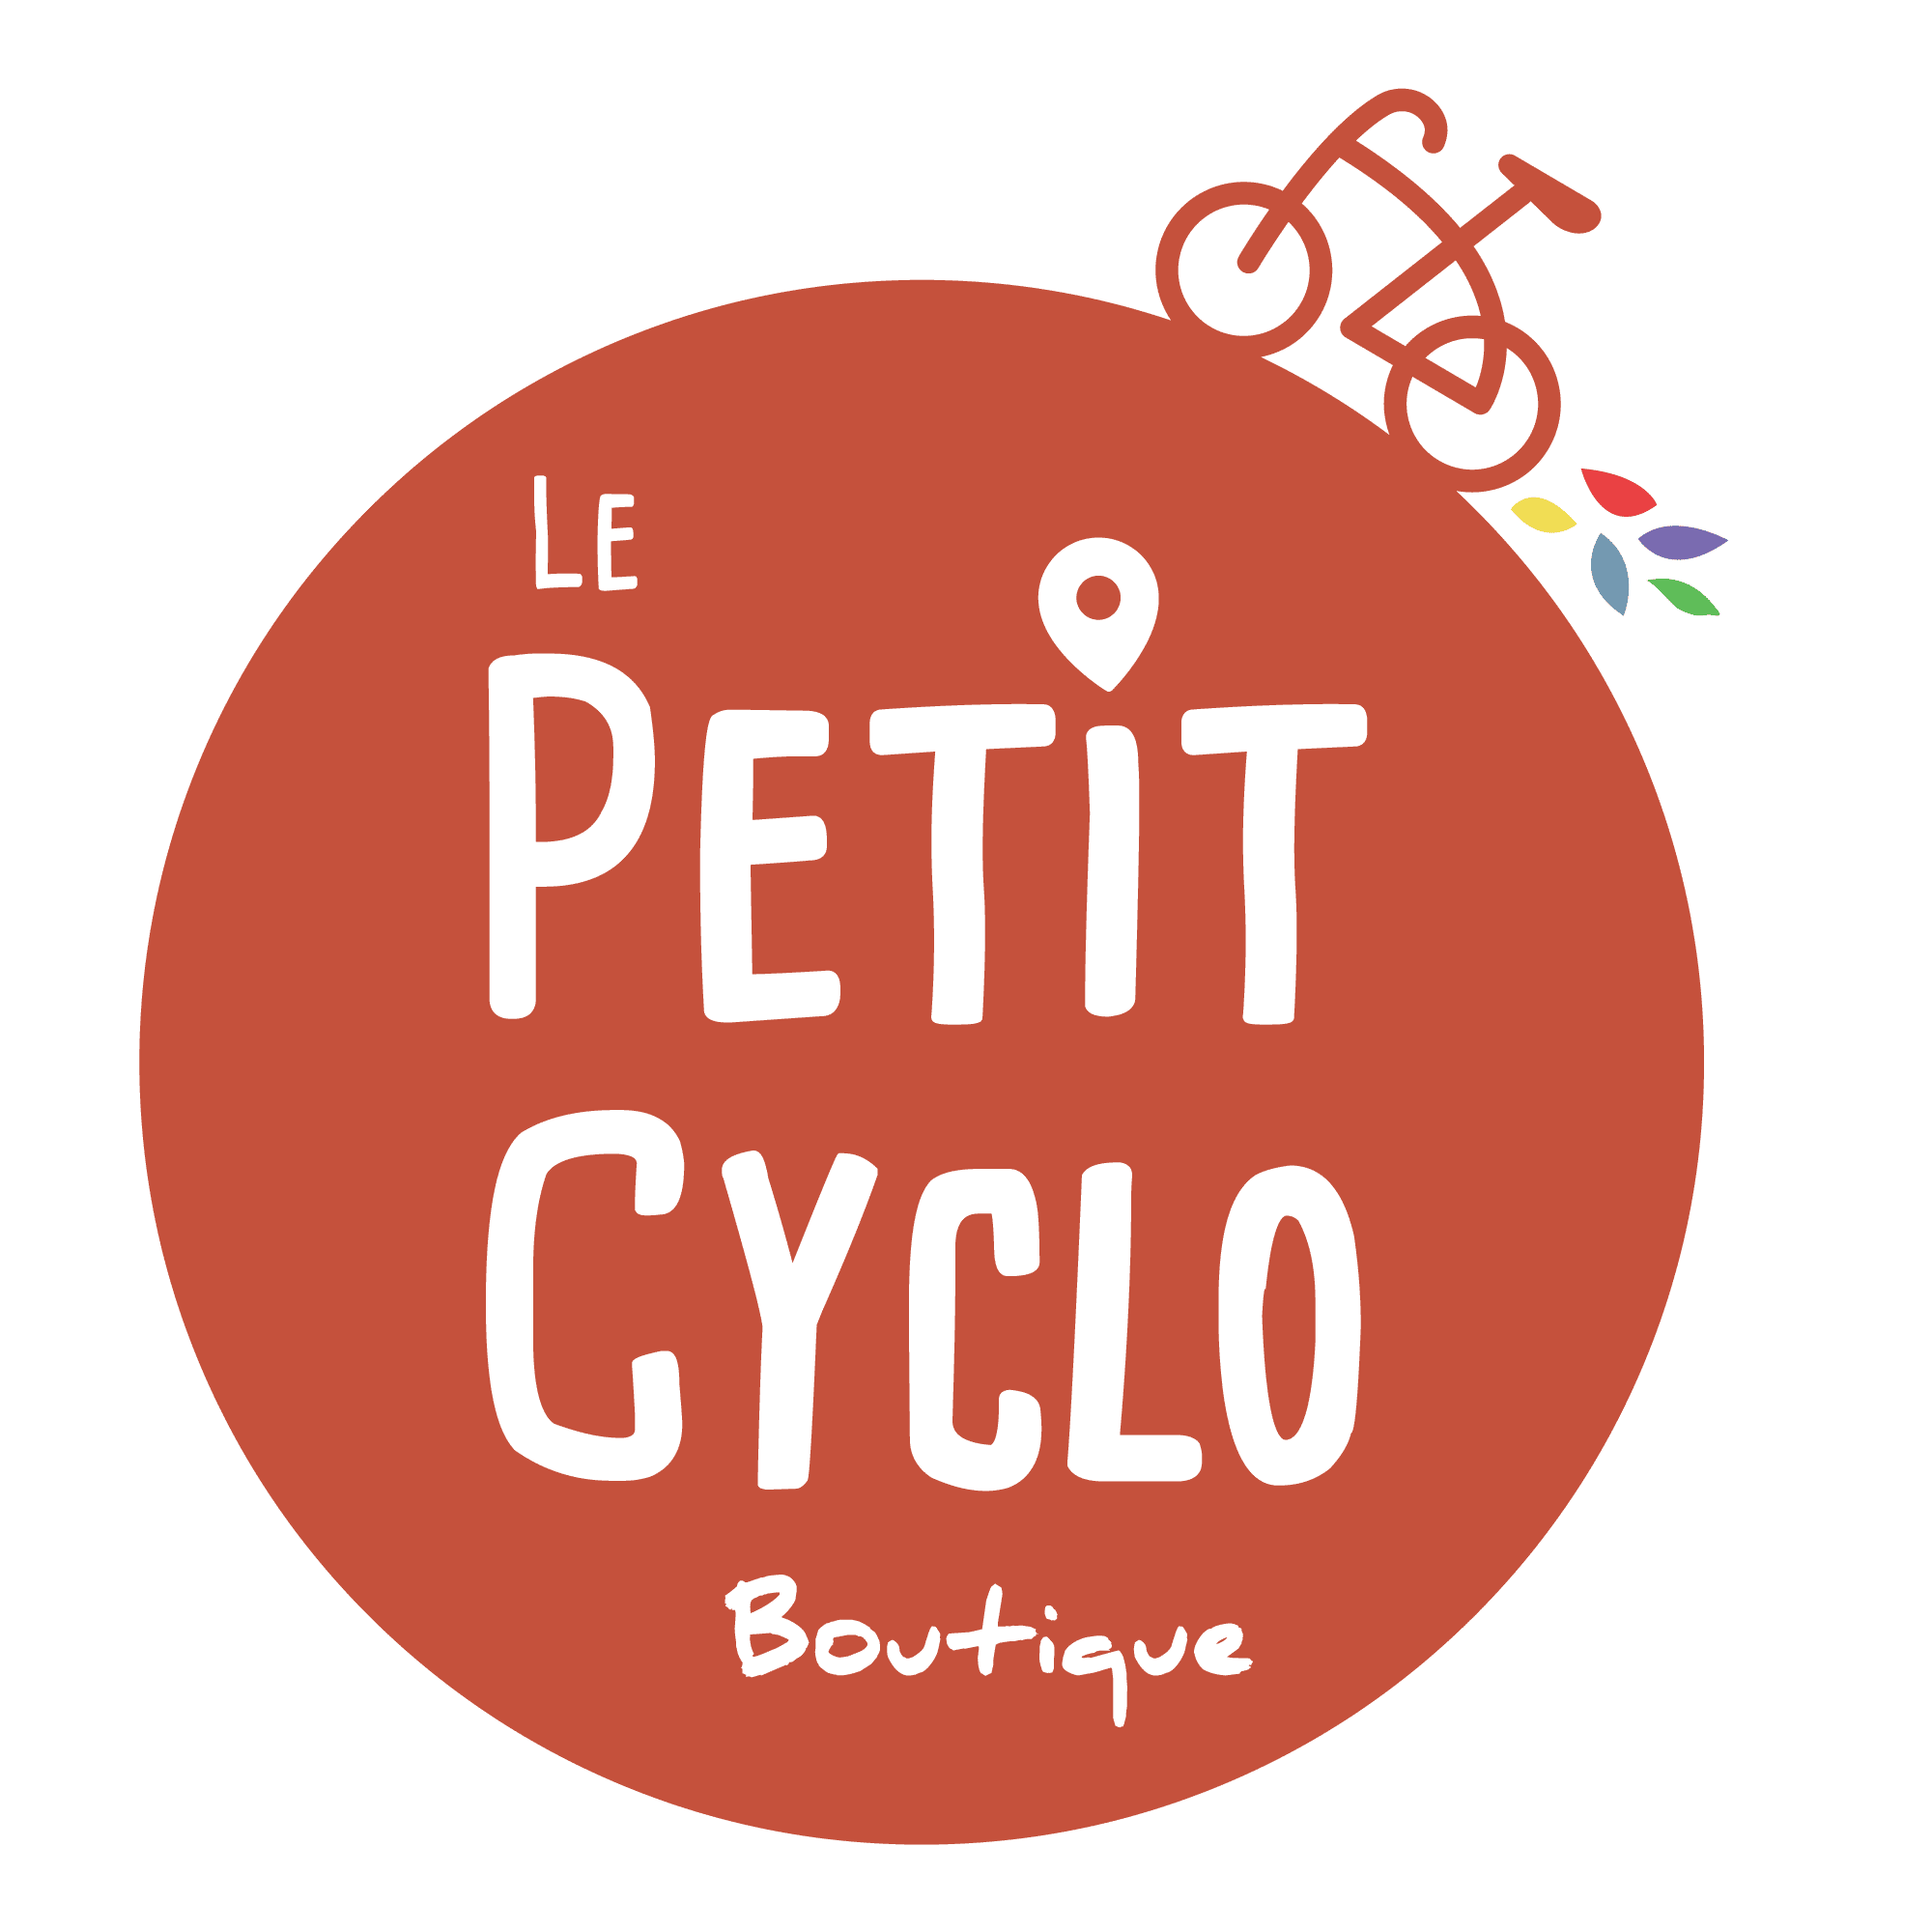 Le petit cyclo boutique